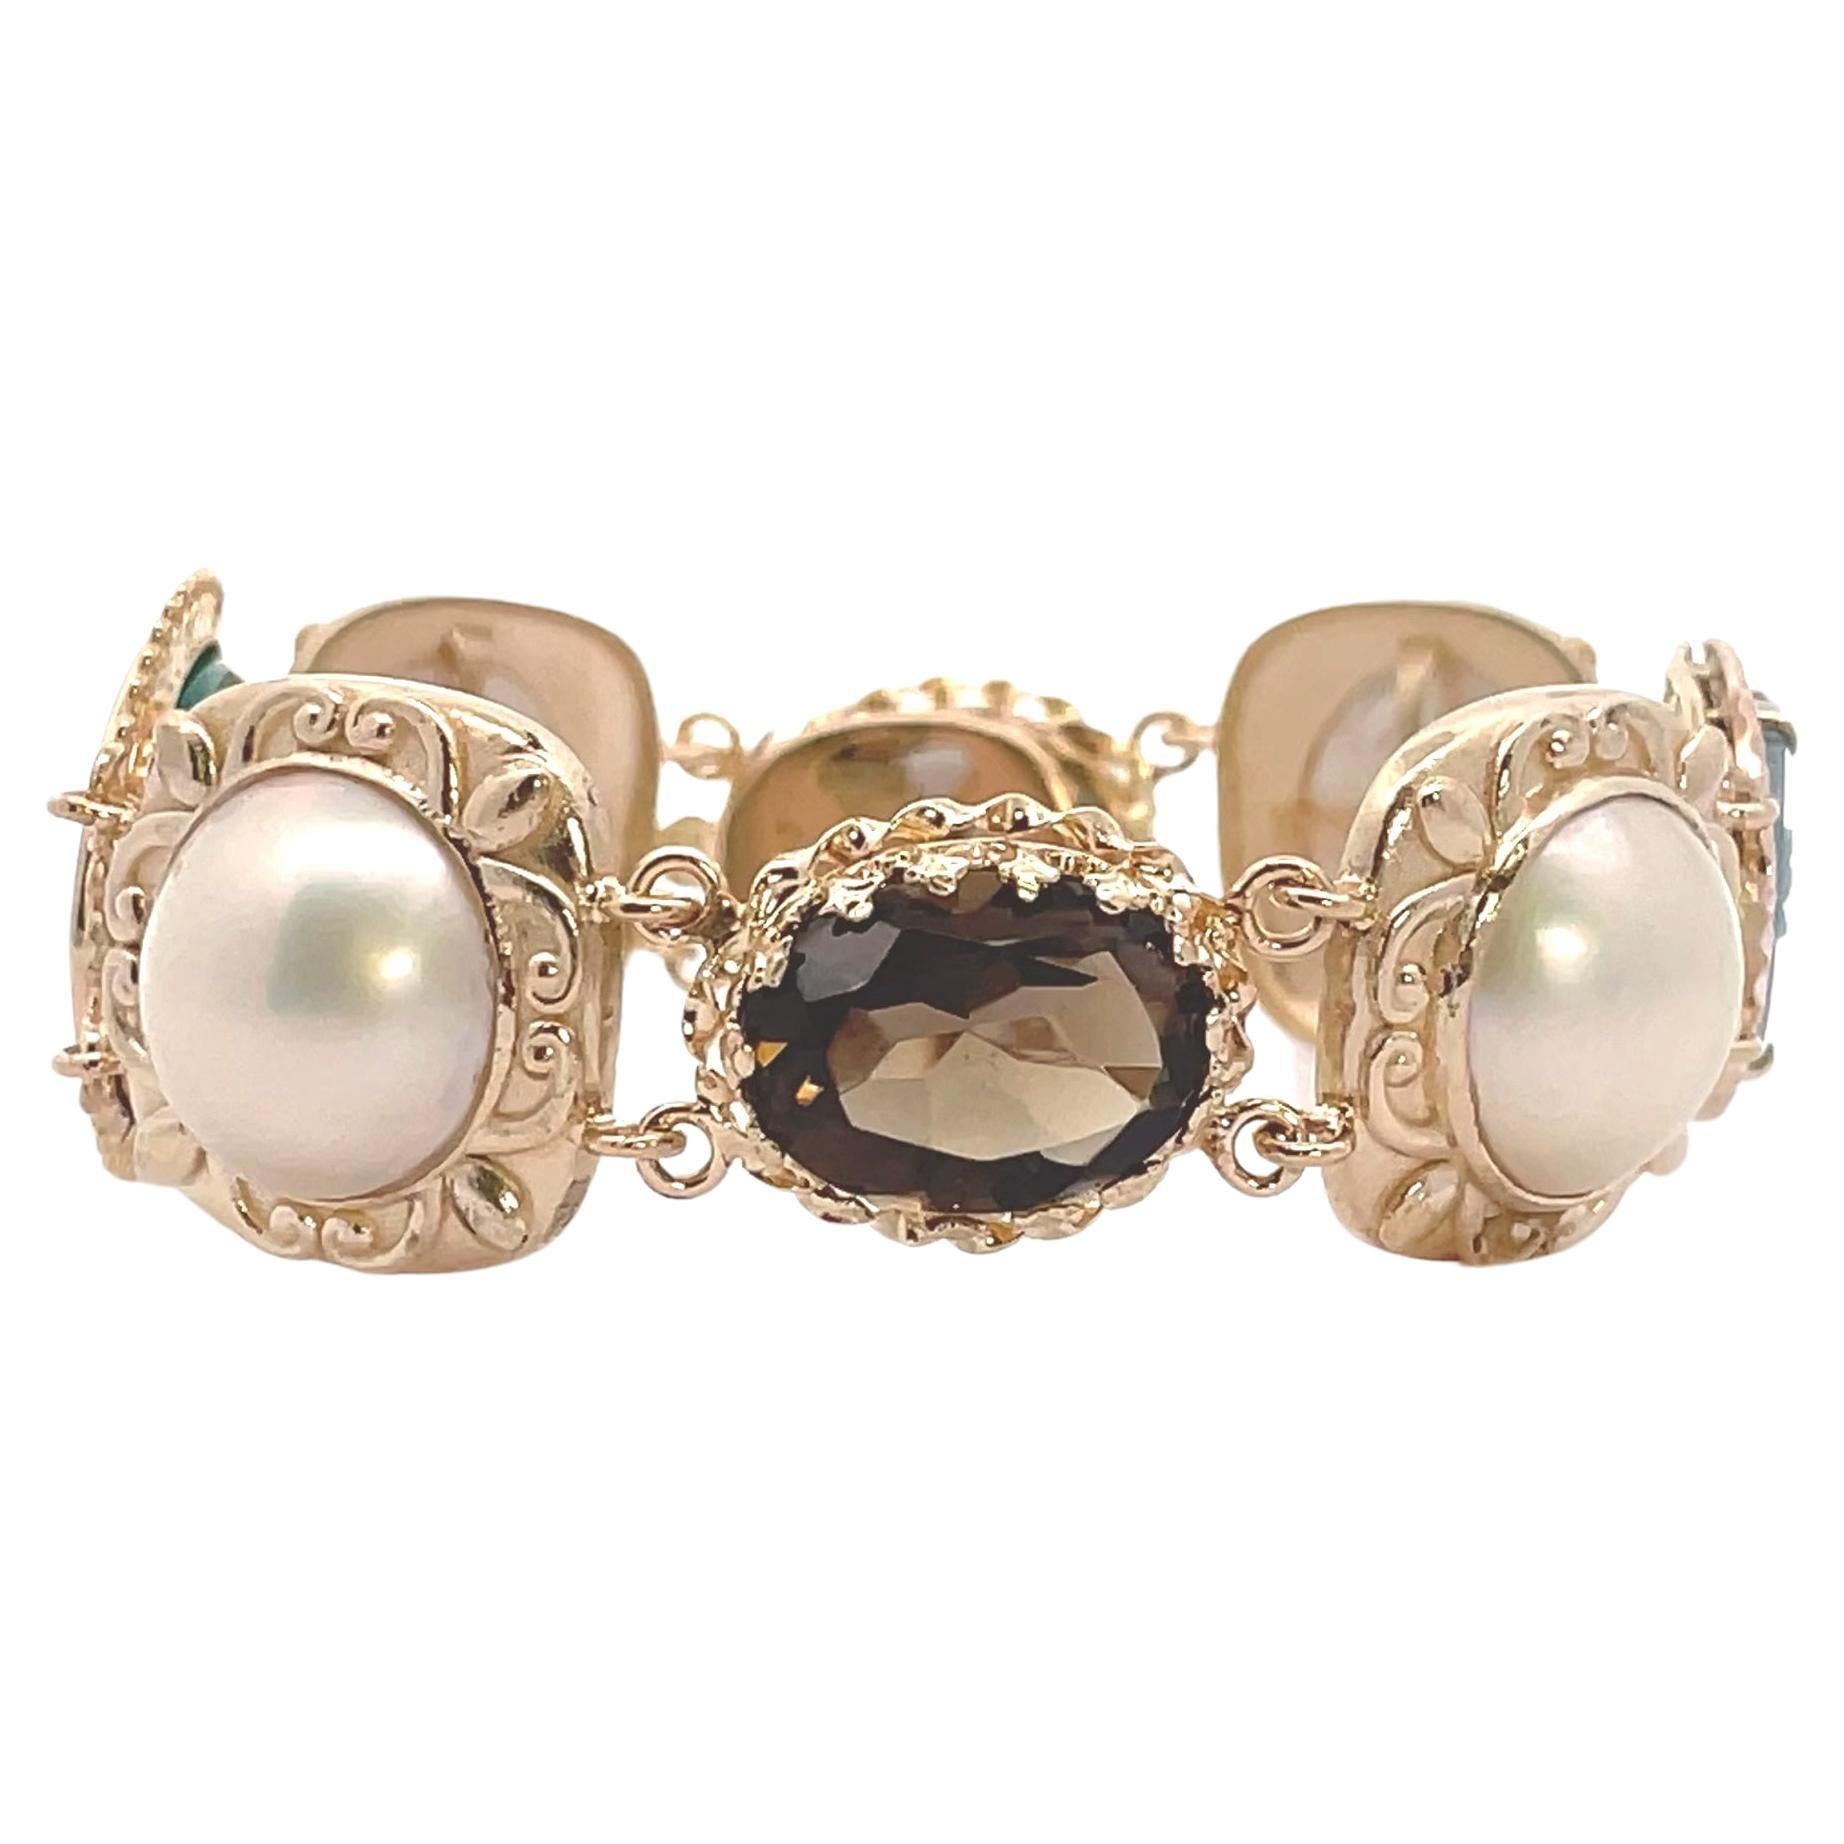 Bracelet unique en or jaune 14K composé d'éléments vintage. Le bracelet comporte 4 perles mobe, deux camées et deux topazes fumées de forme ovale.  L'un des camées est sculpté dans de l'onyx vert et représente le profil d'une femme. L'autre camée